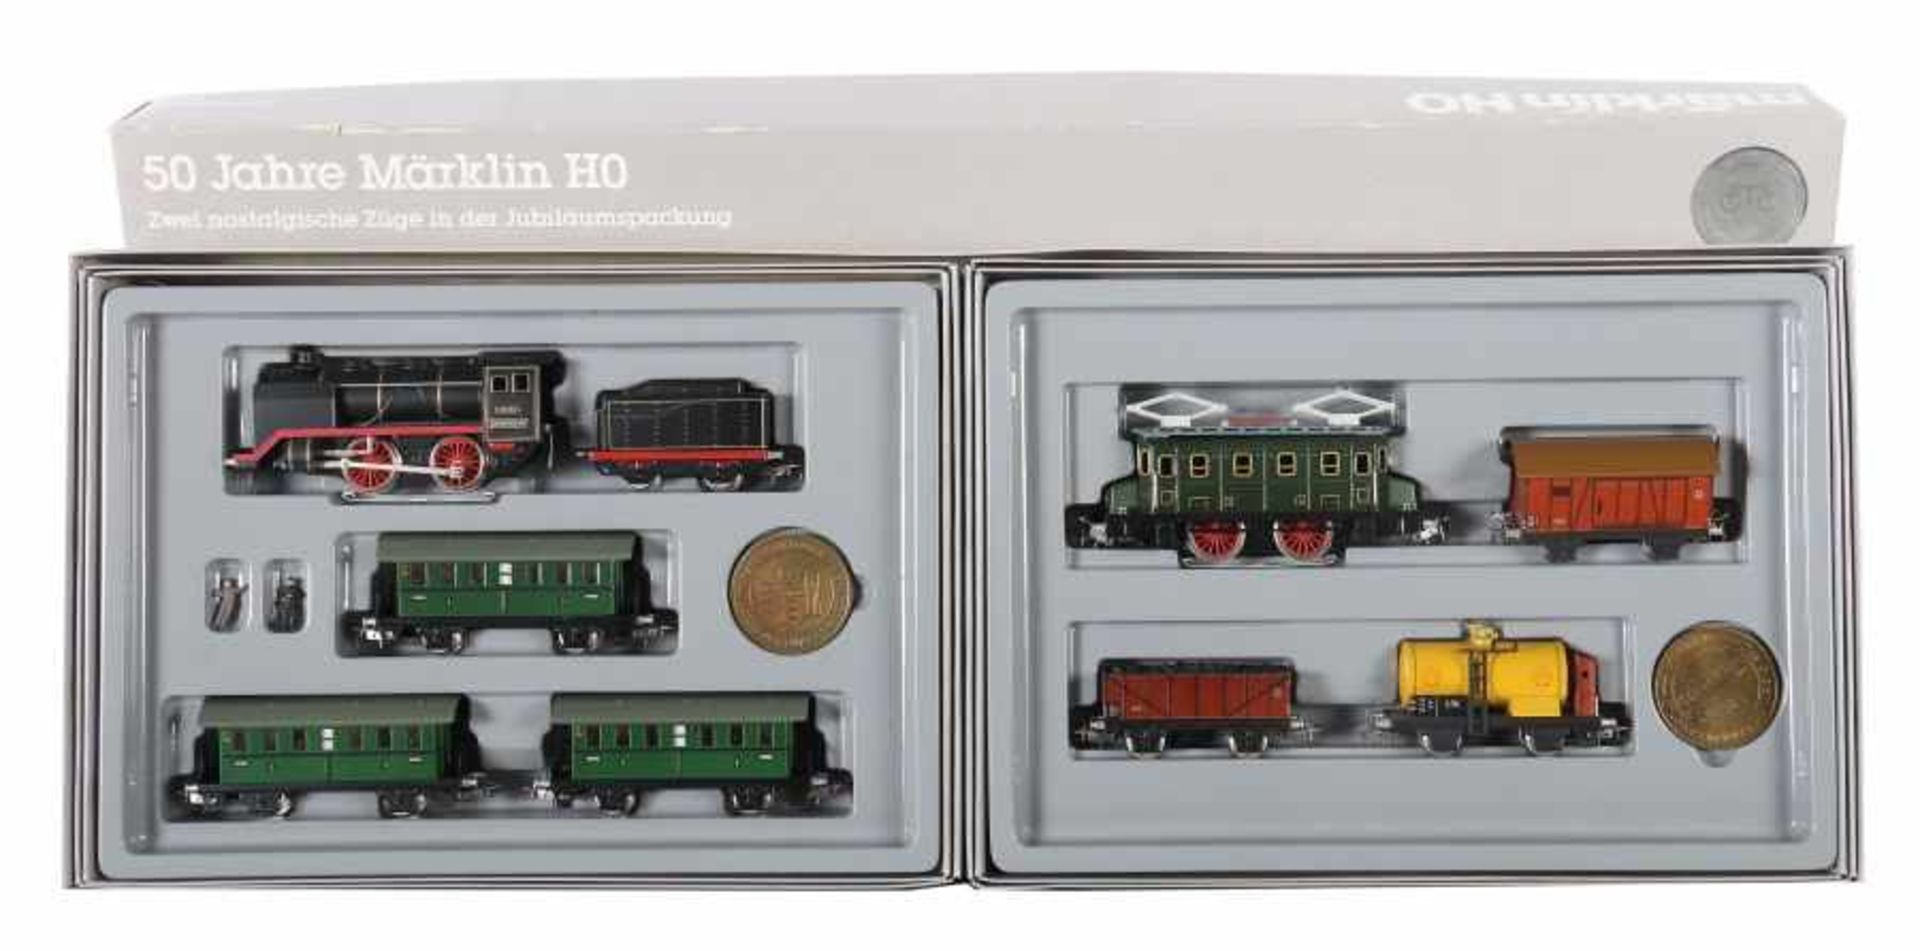 Jubiläums-PackungMärklin, Spur H0, Packung 0050, 2 nostalgische Züge mit 4 und 3 Wagen 1 x zwei